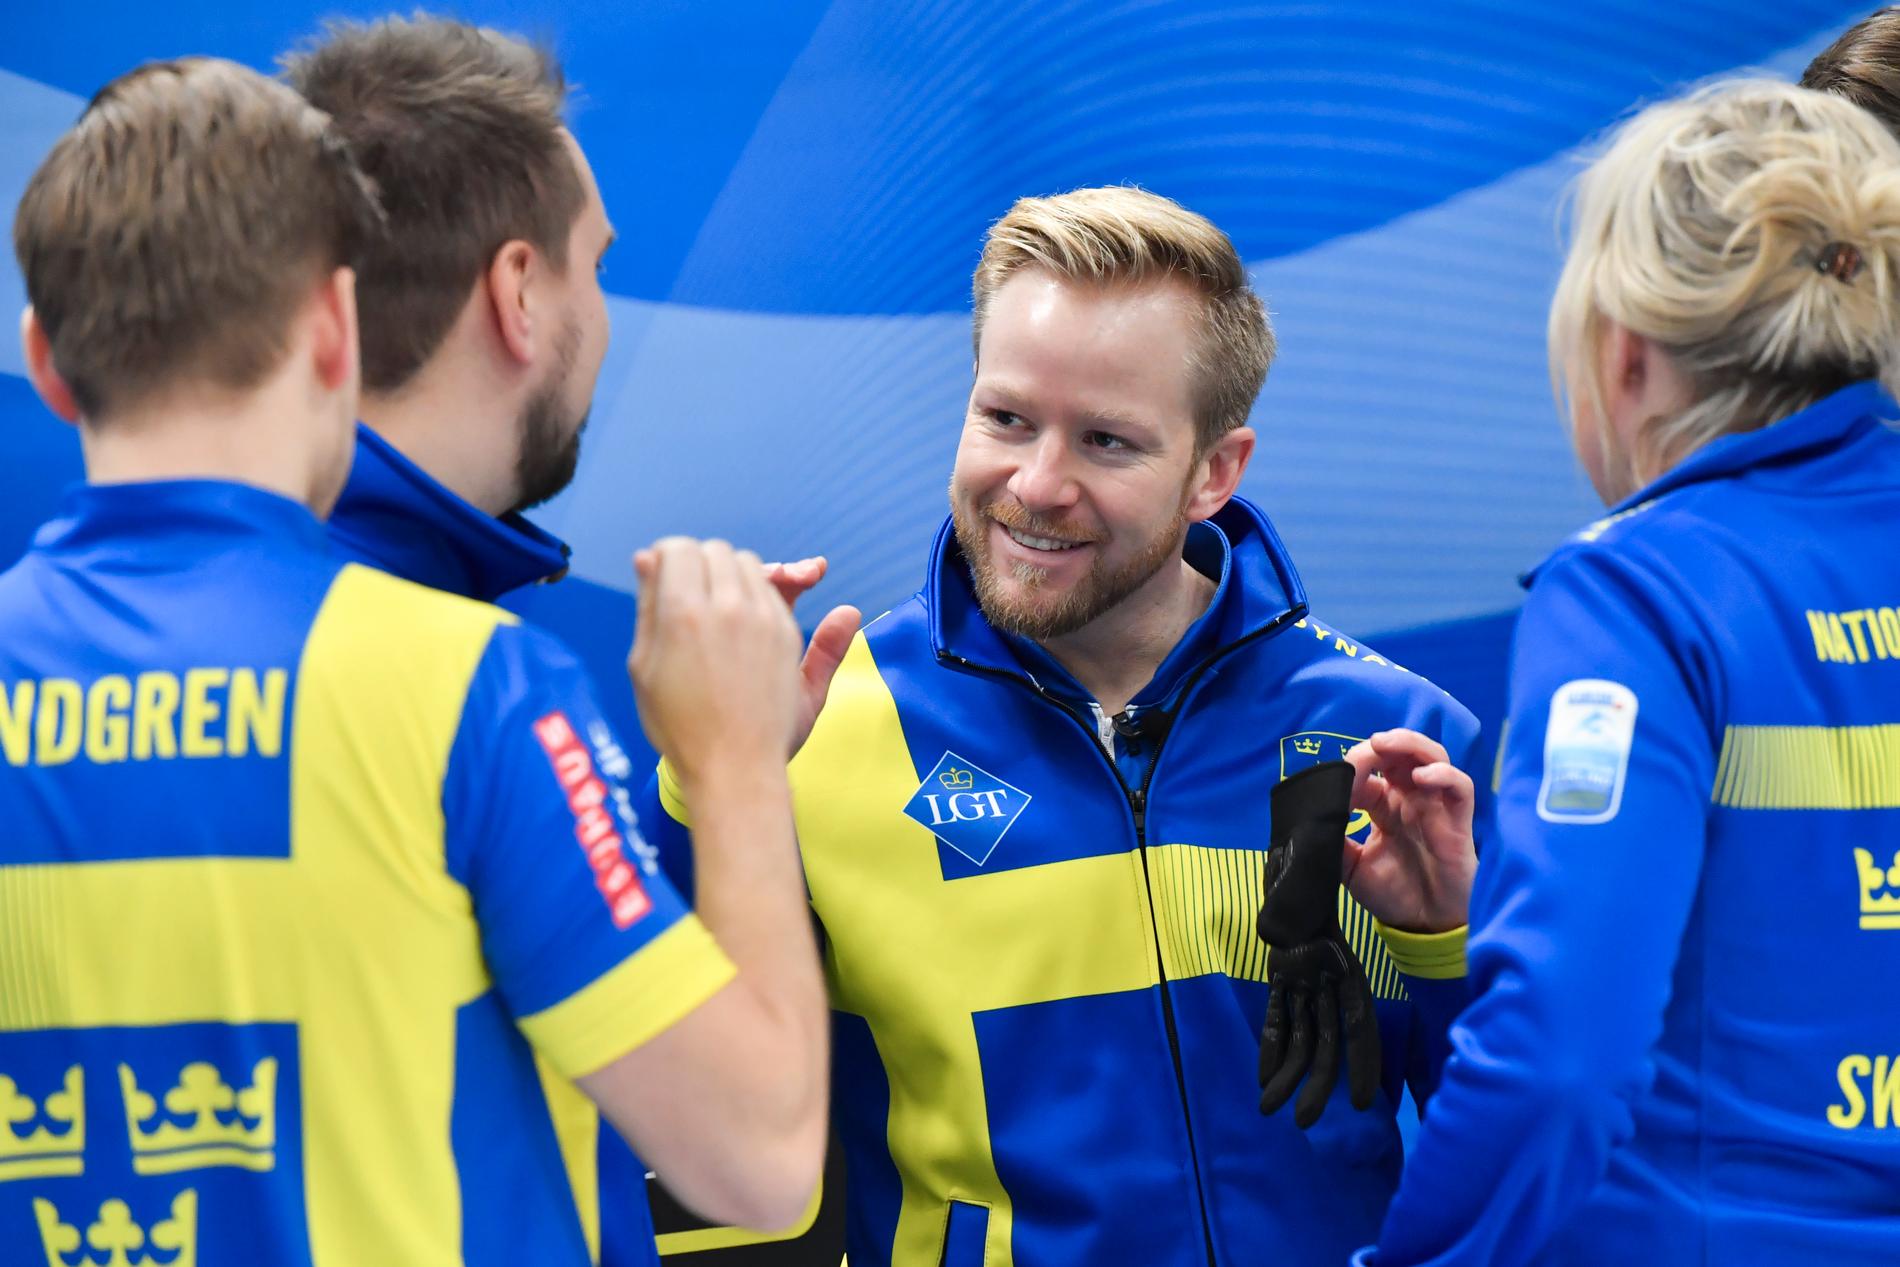 Sverige vinner EM-guld 2019 med Niklas Edin, Oskar Eriksson, Rasmus Wranå och Christoffer Sundgren i lag Edin.